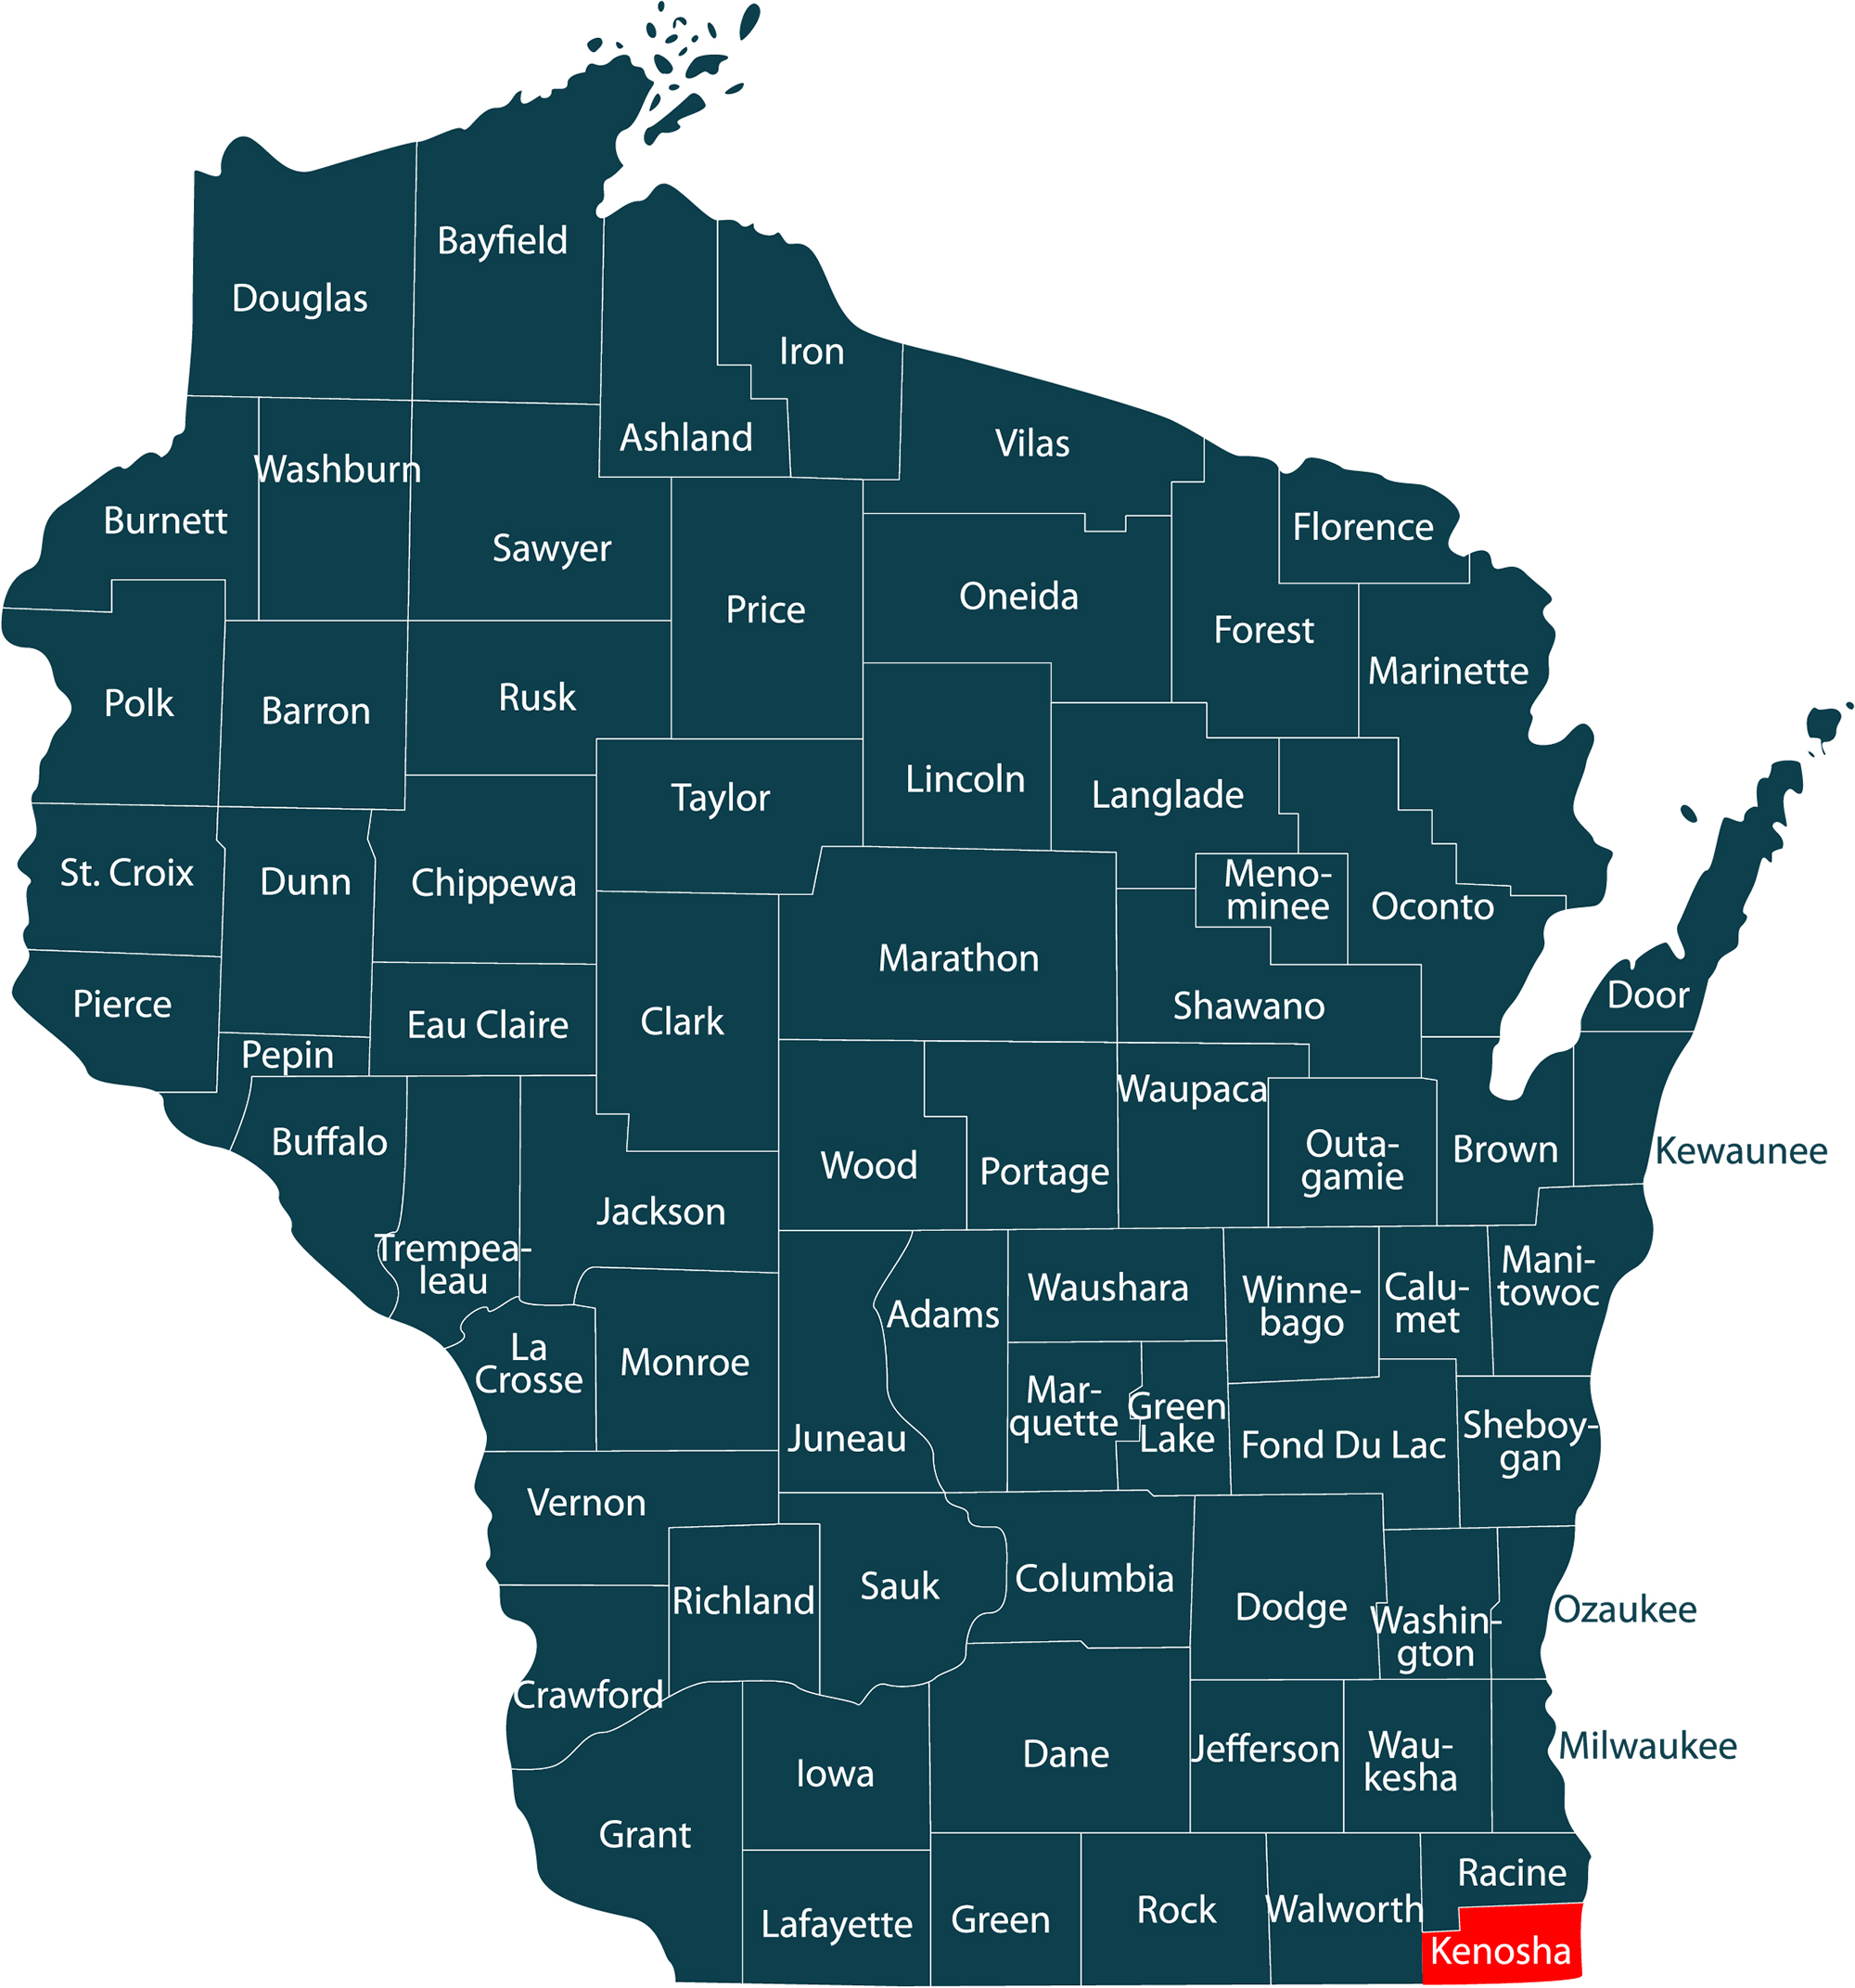 Kenosha County Wisconsin @ wisconsin.com